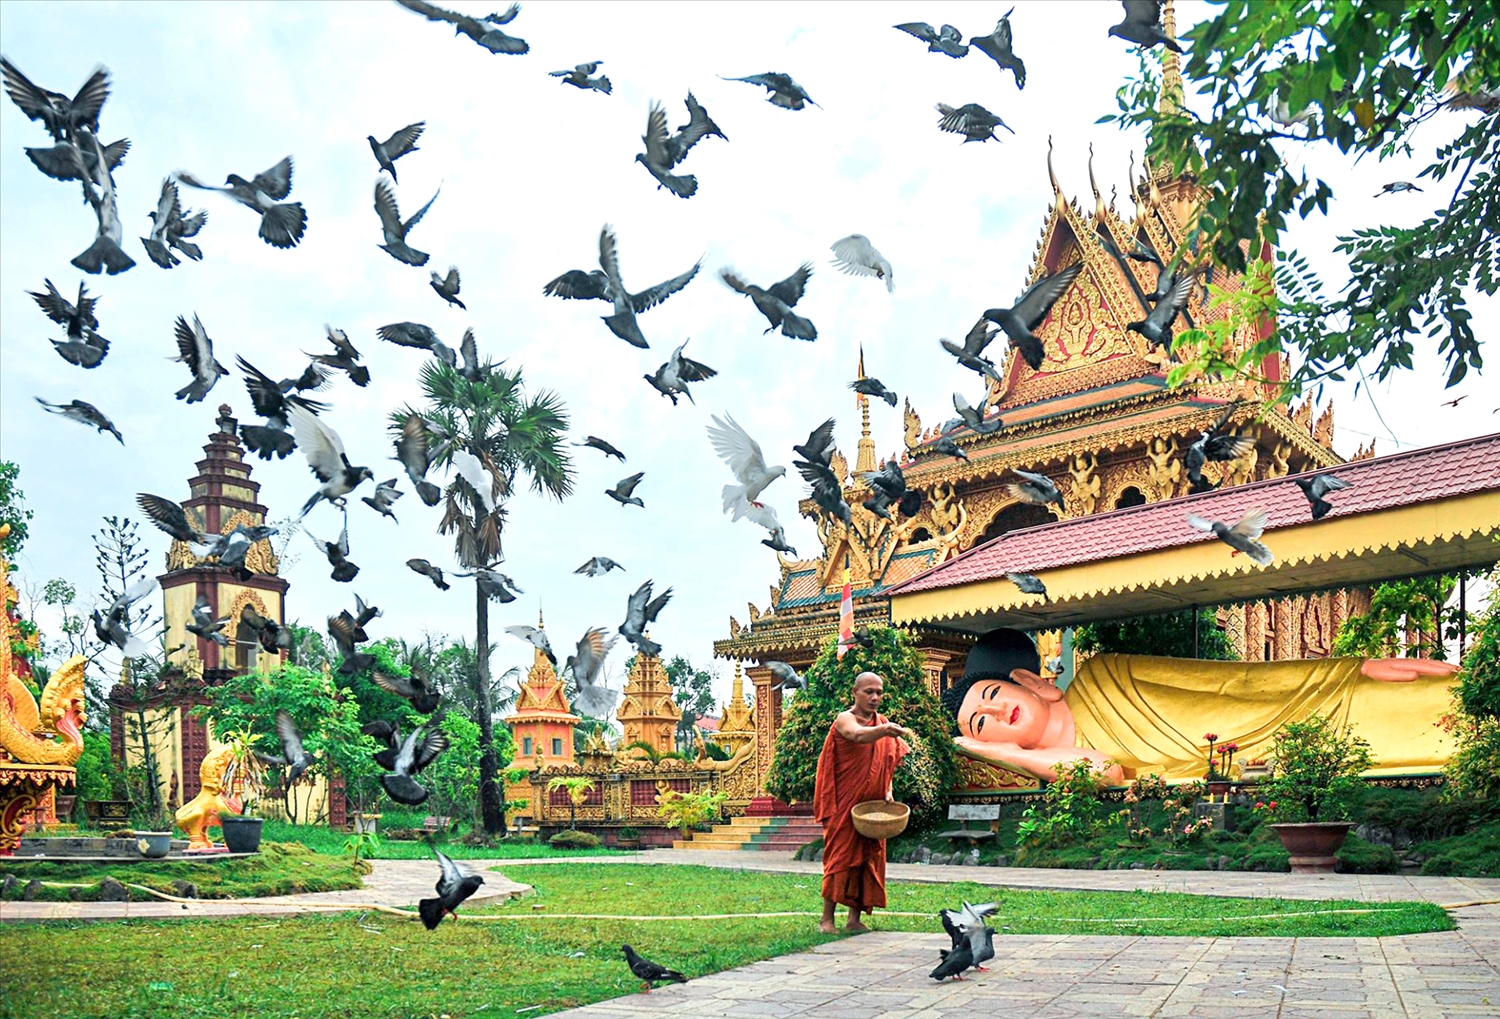 Chùa Khmer Monivongsa Borapham Cà Mau là nơi bảo tồn các giá trị văn hóa đặc sắc của người Khmer ở Cà Mau